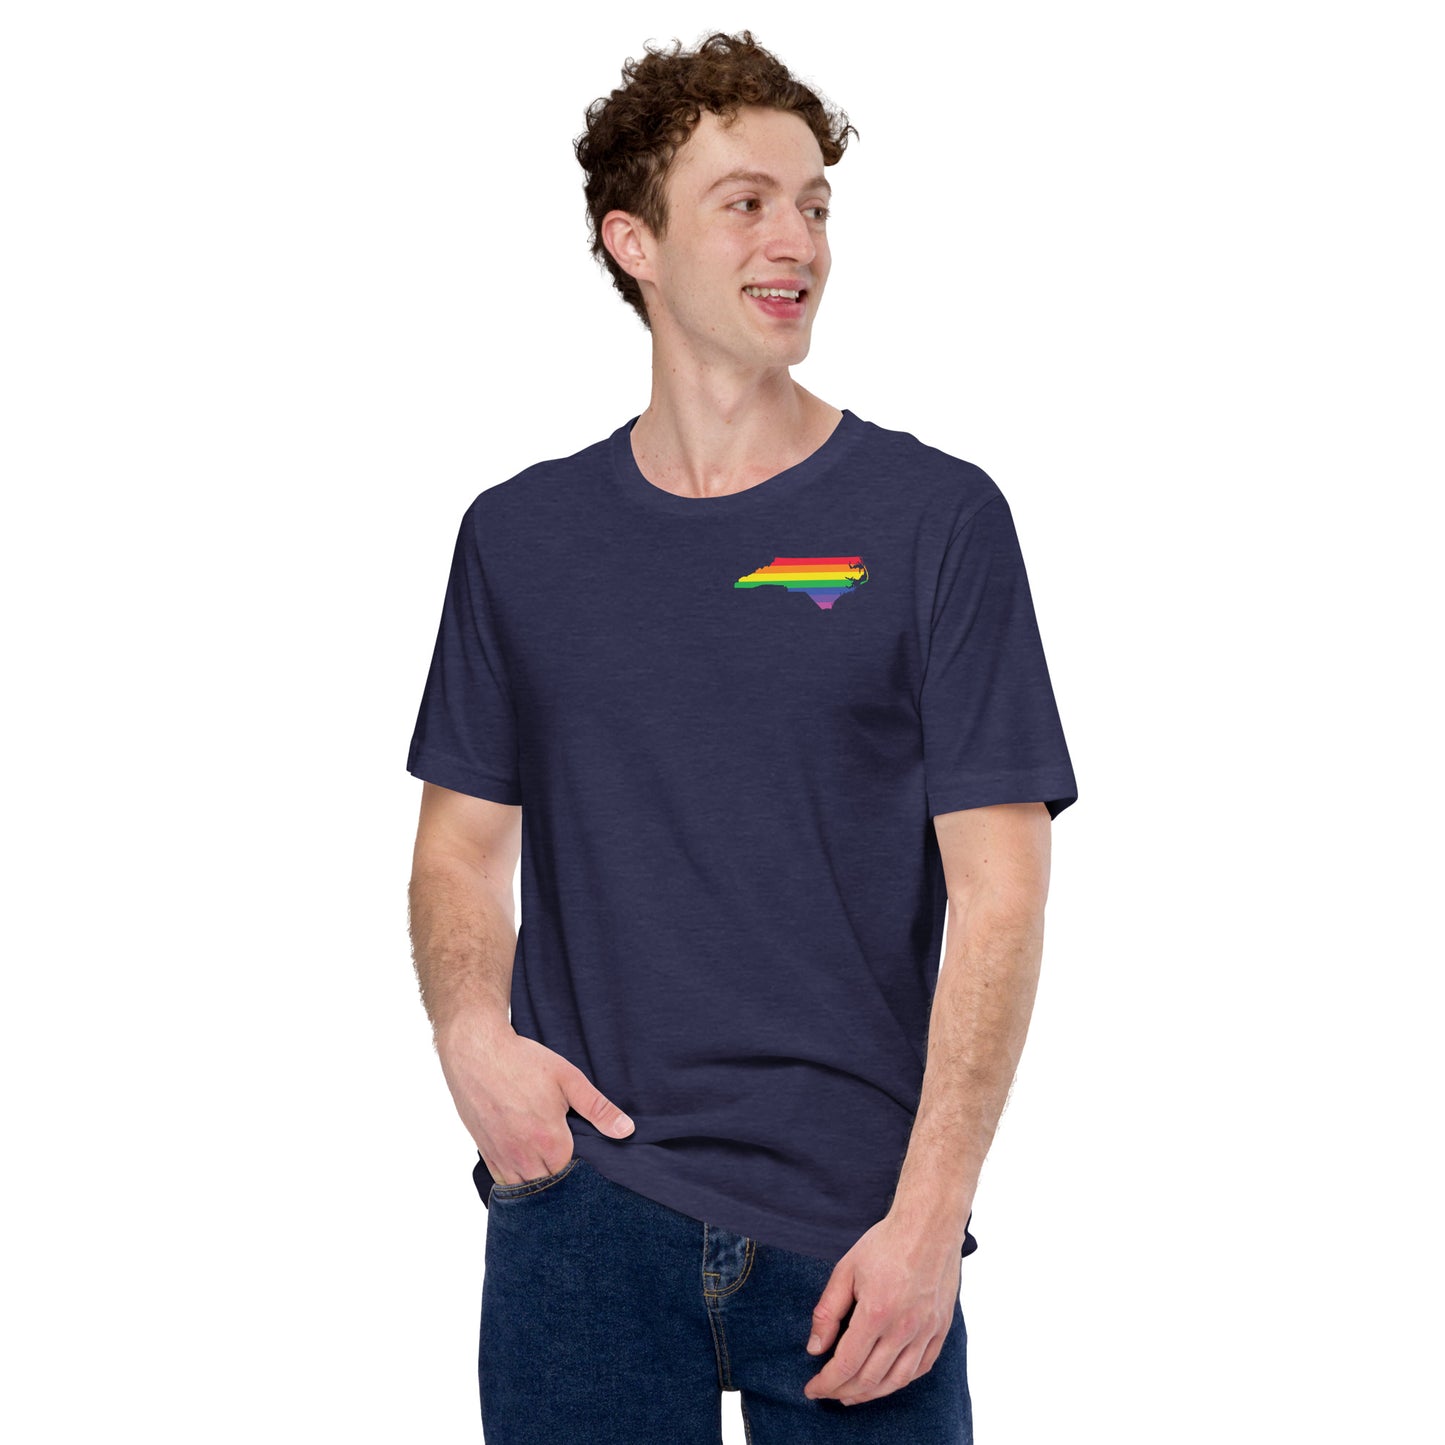 "North Carolina Proud" Unisex t-shirt